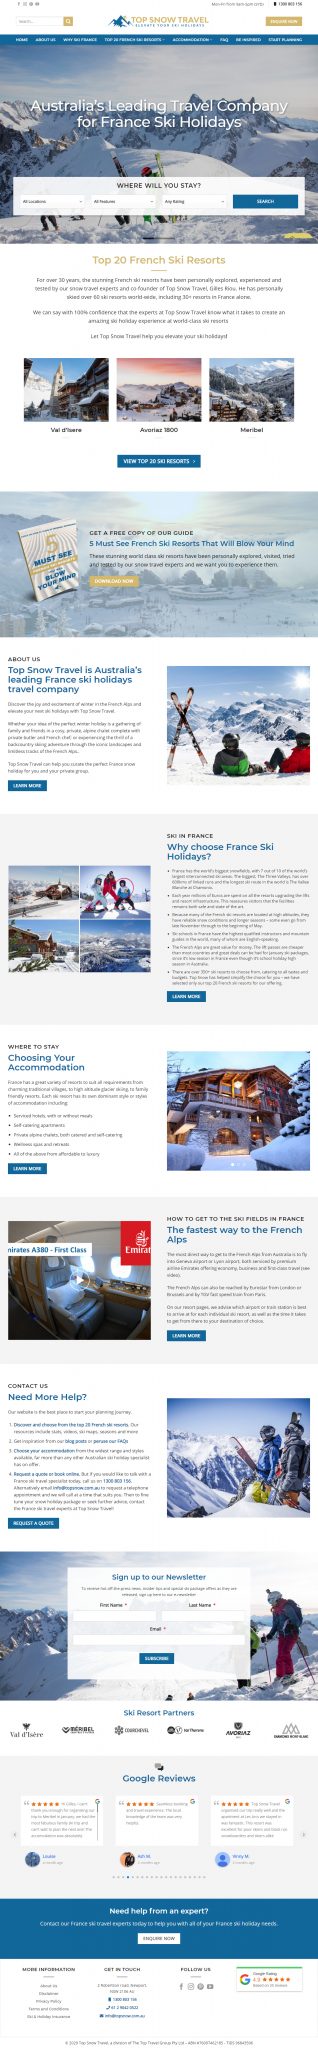 Hospitality Tourism Website Design Top Snow Travel